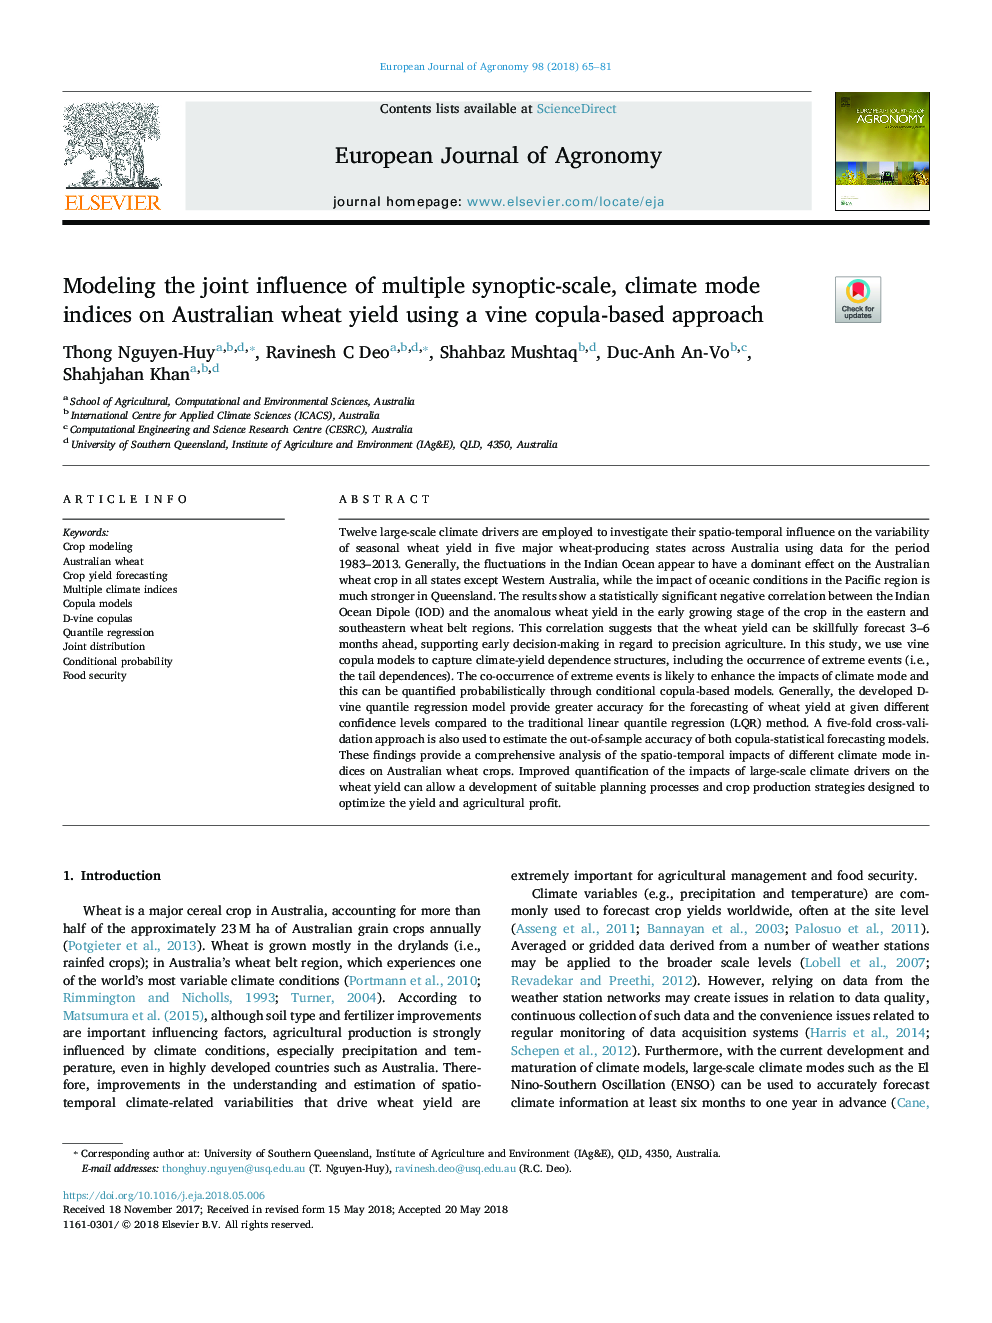 مدل سازی تاثیر مشترک چند مقیاس سینوپتیک، شاخص های آب و هوایی بر عملکرد گندم استرالیا با استفاده از یک روش مبتنی بر کوپه 